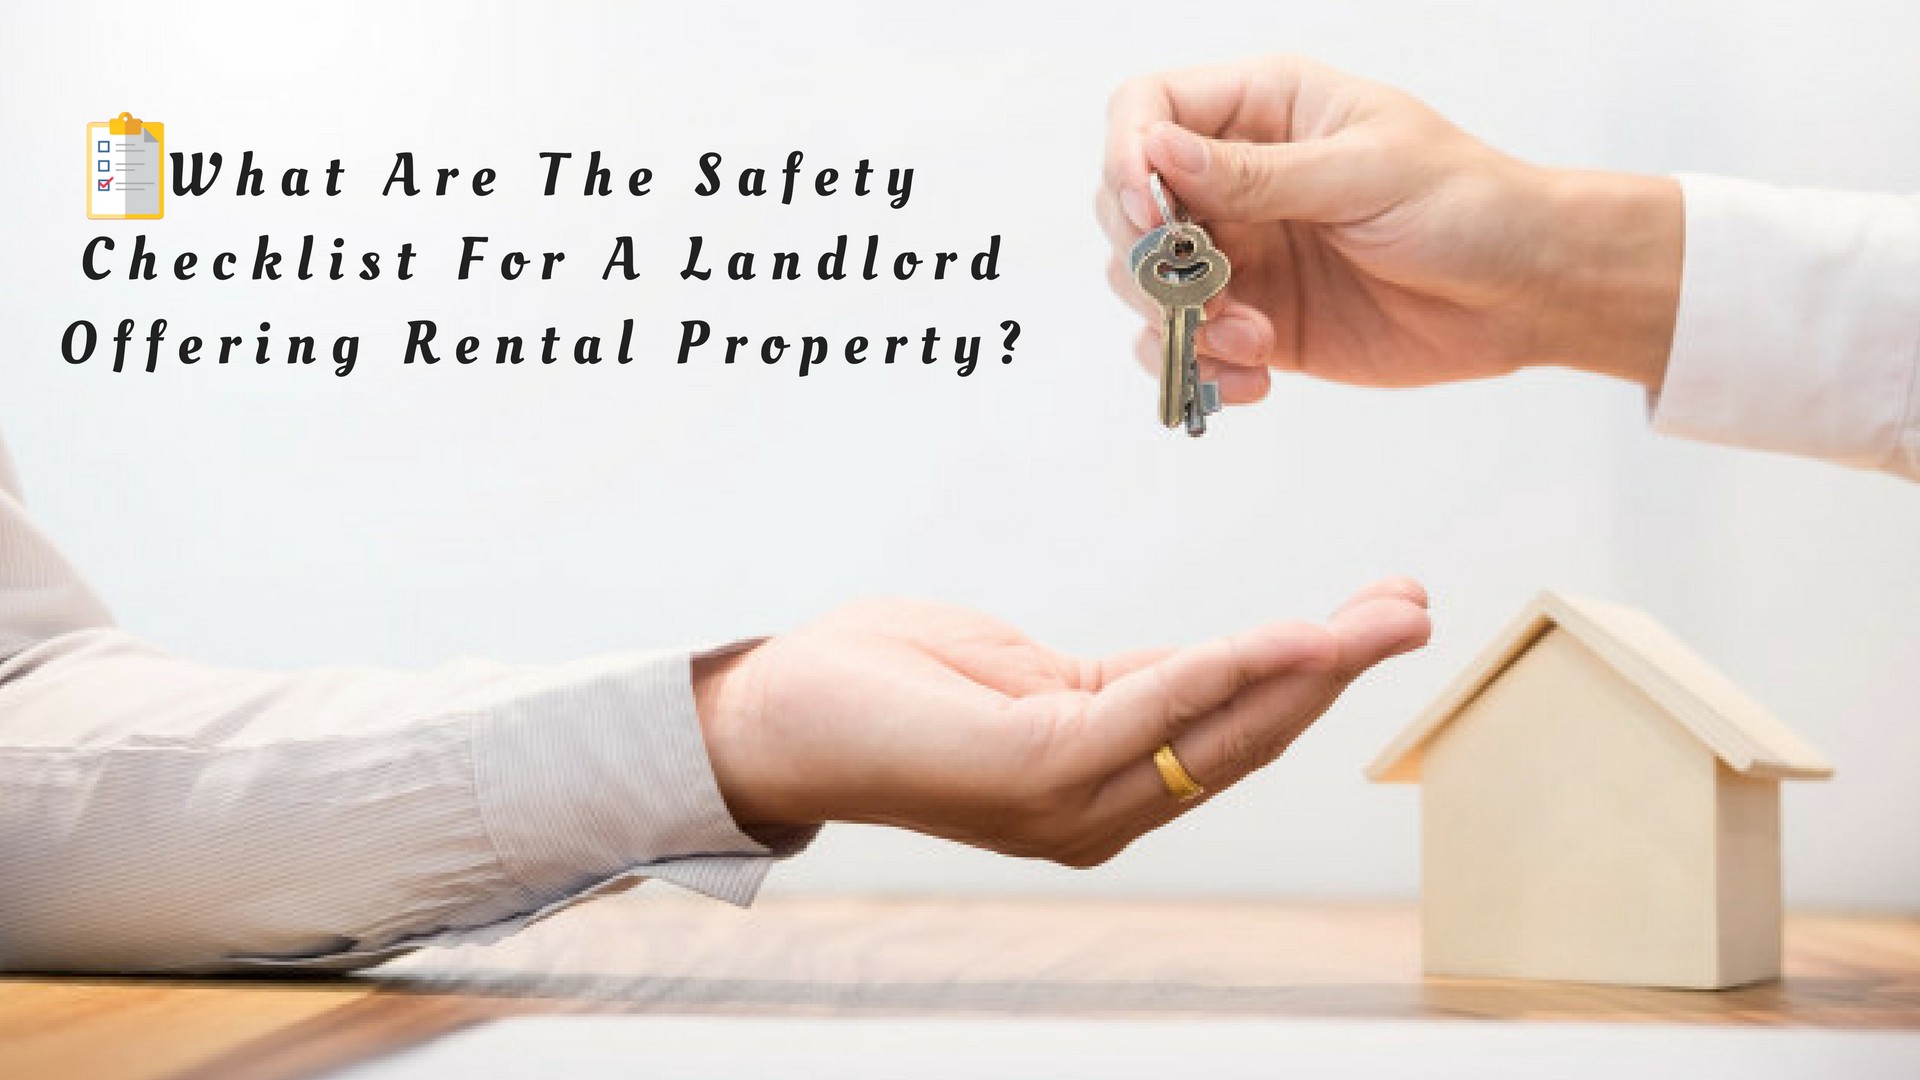 Rental Property Safety